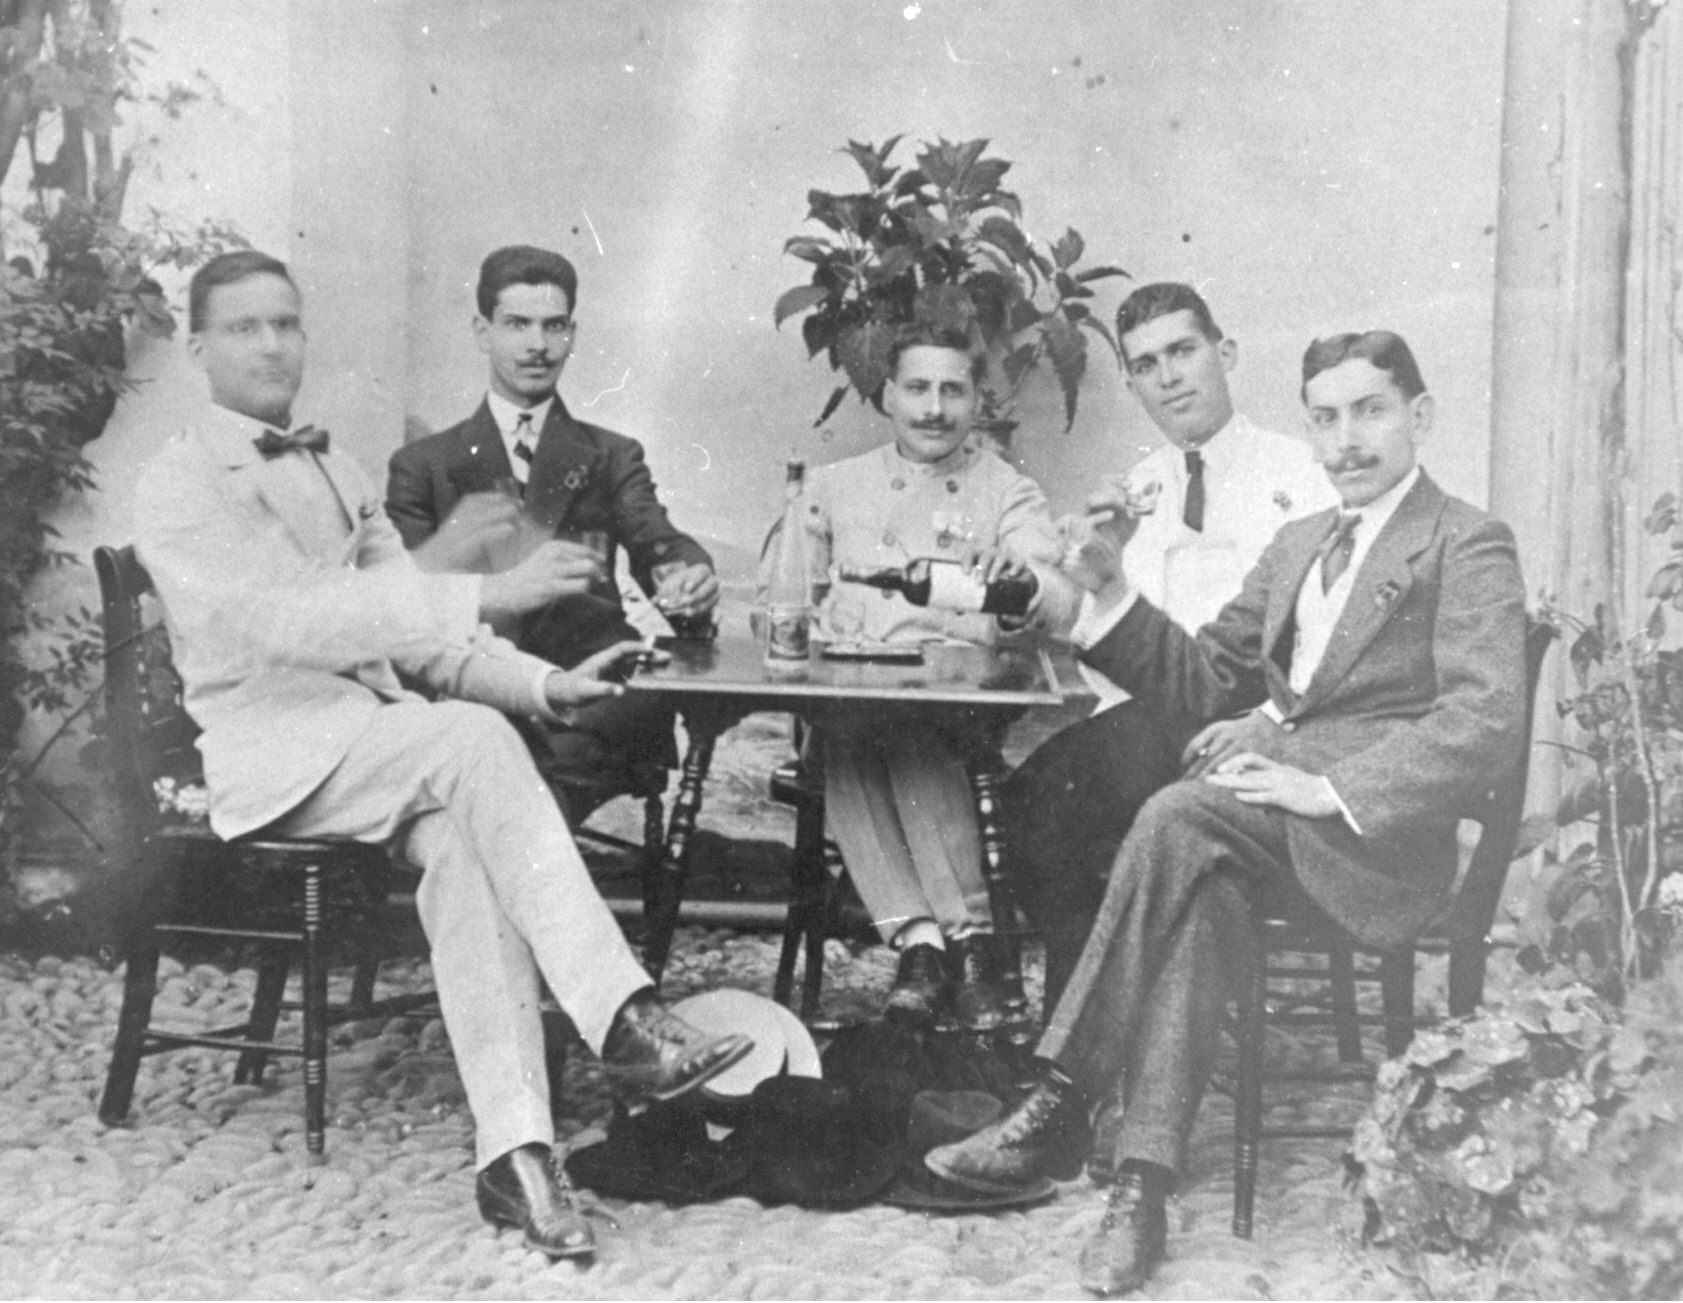 

Comparten tertulia y copa D. José García Castillo, Paquito Bautista, Masito y D. Narciso Guerra. 

